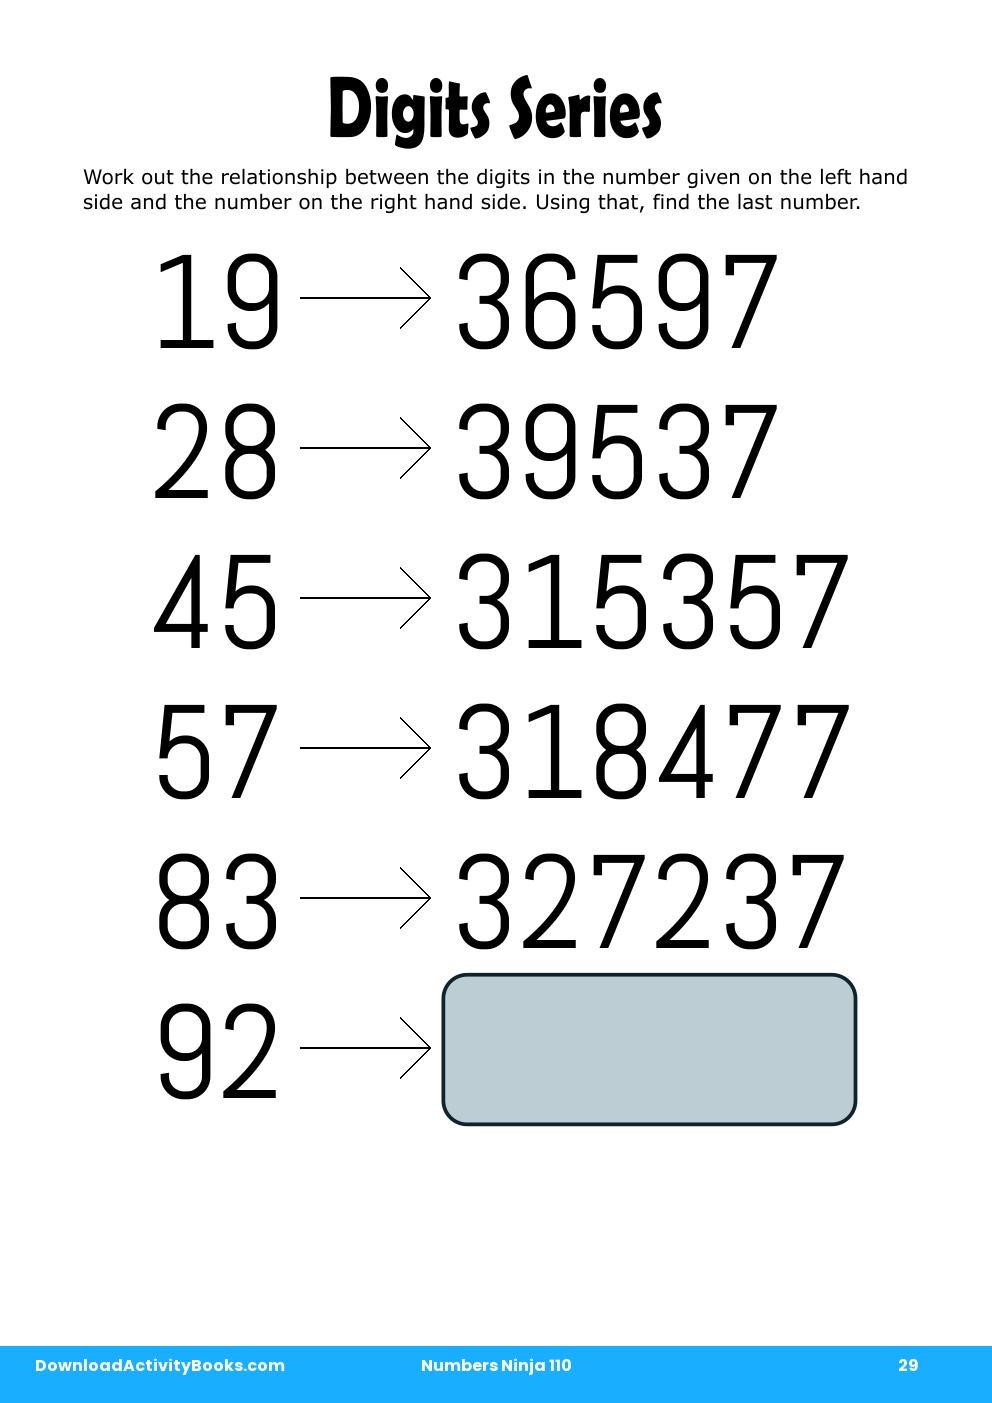 Digits Series in Numbers Ninja 110